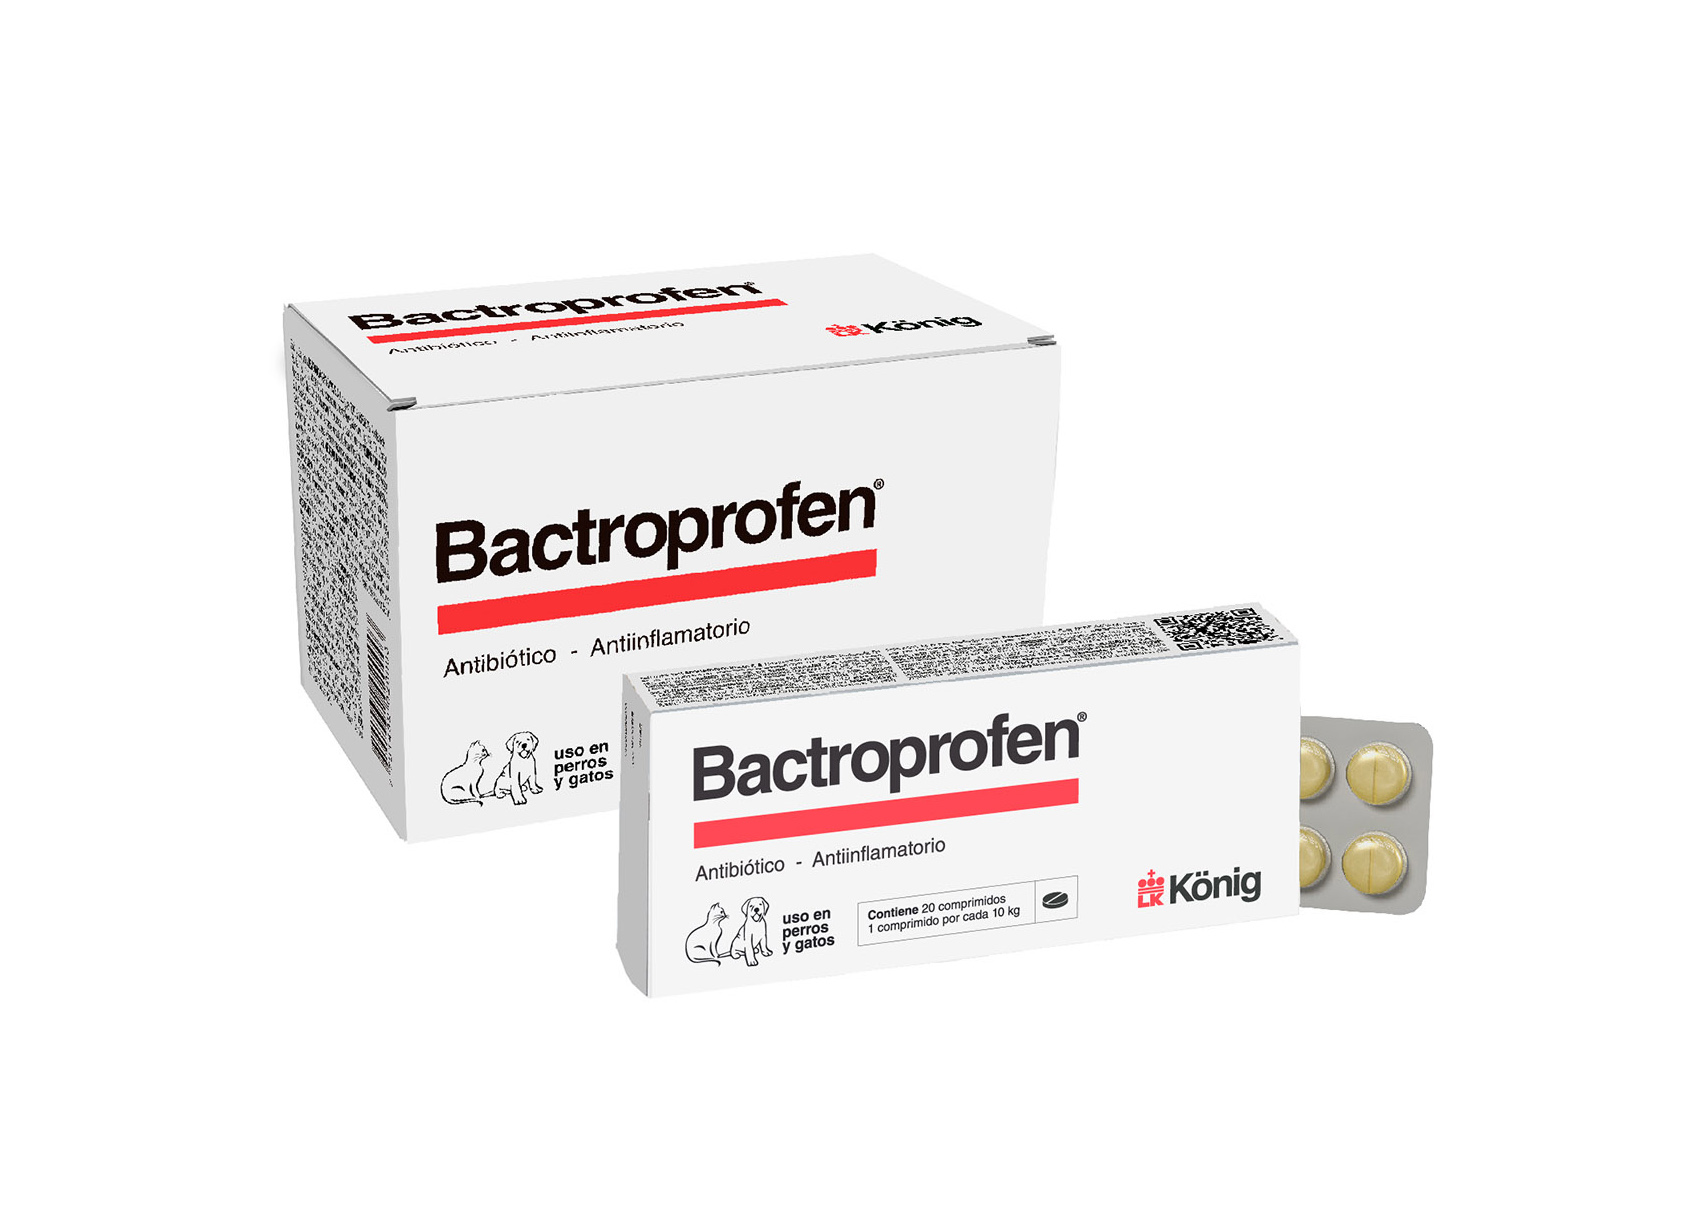 Bactroprofen Konig - Productos para pequeños animales y animales productivos